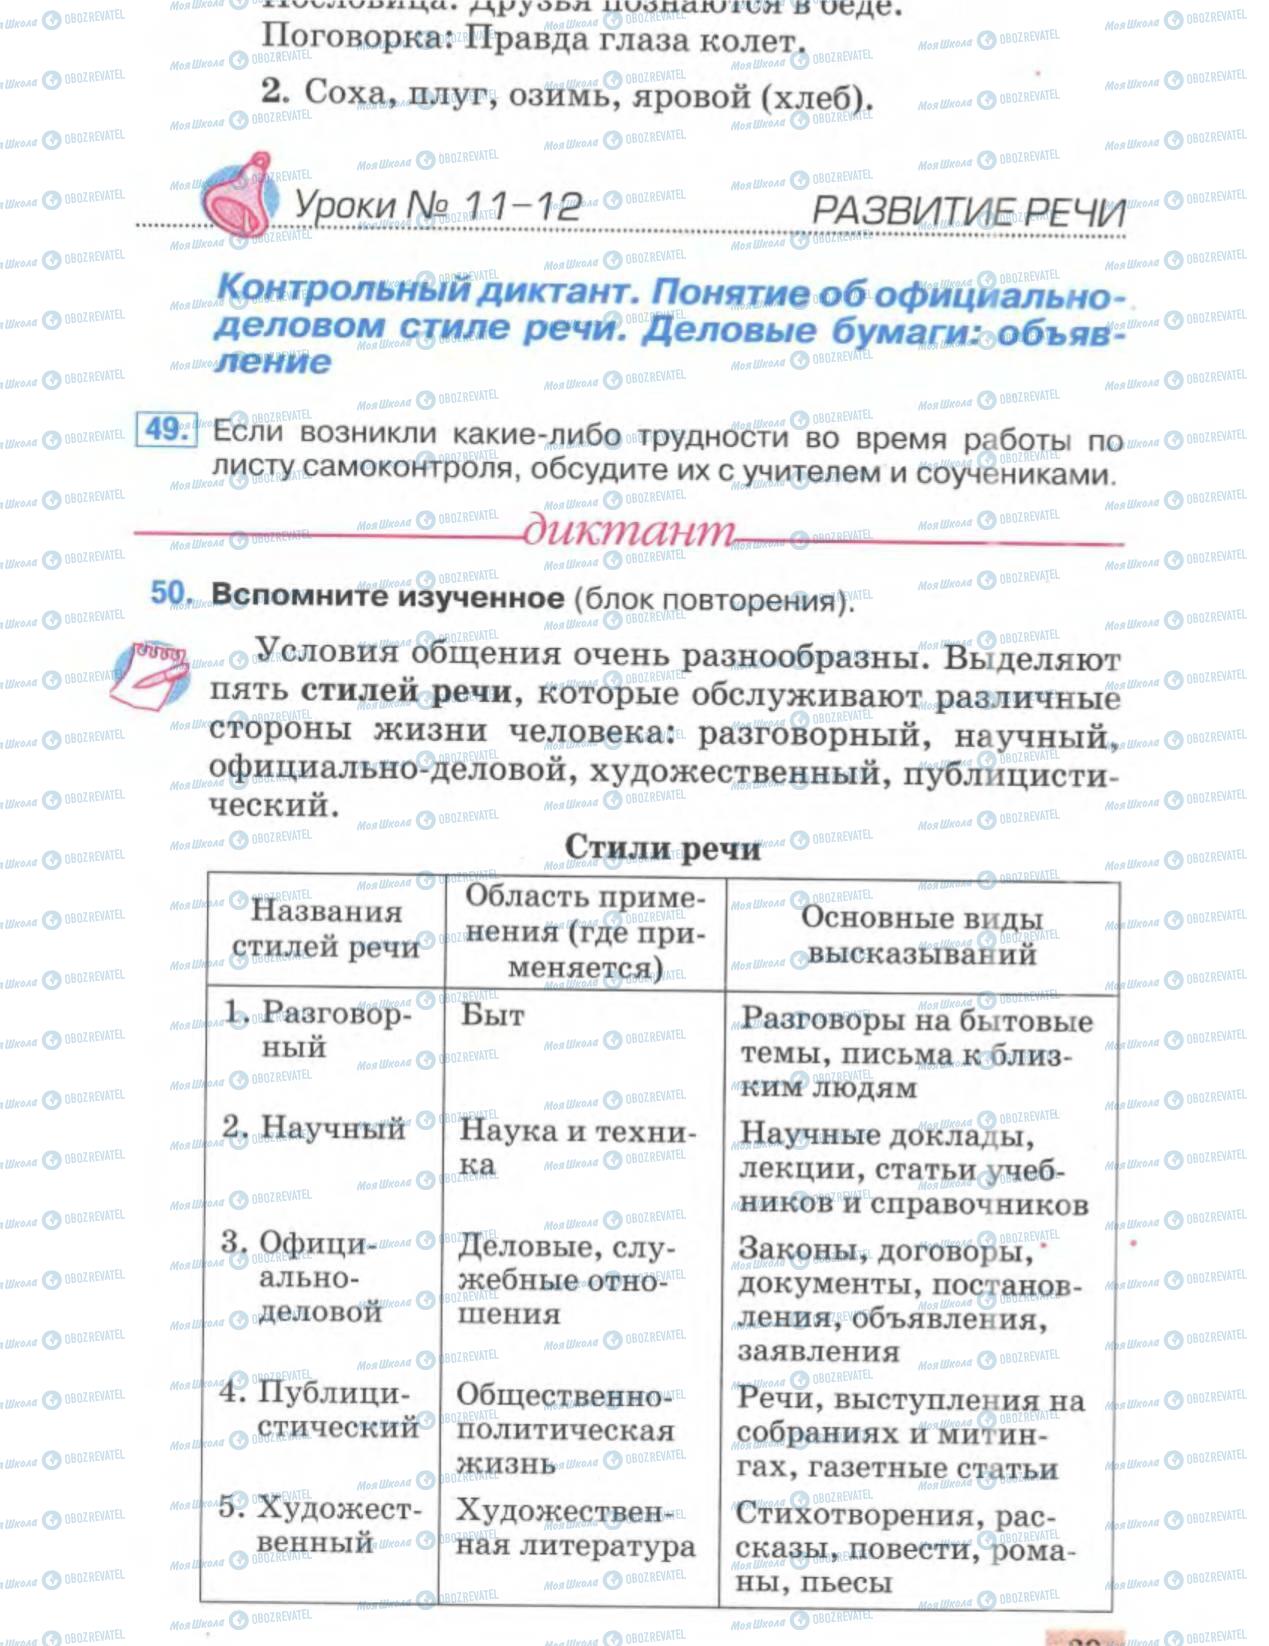 Учебники Русский язык 6 класс страница 28